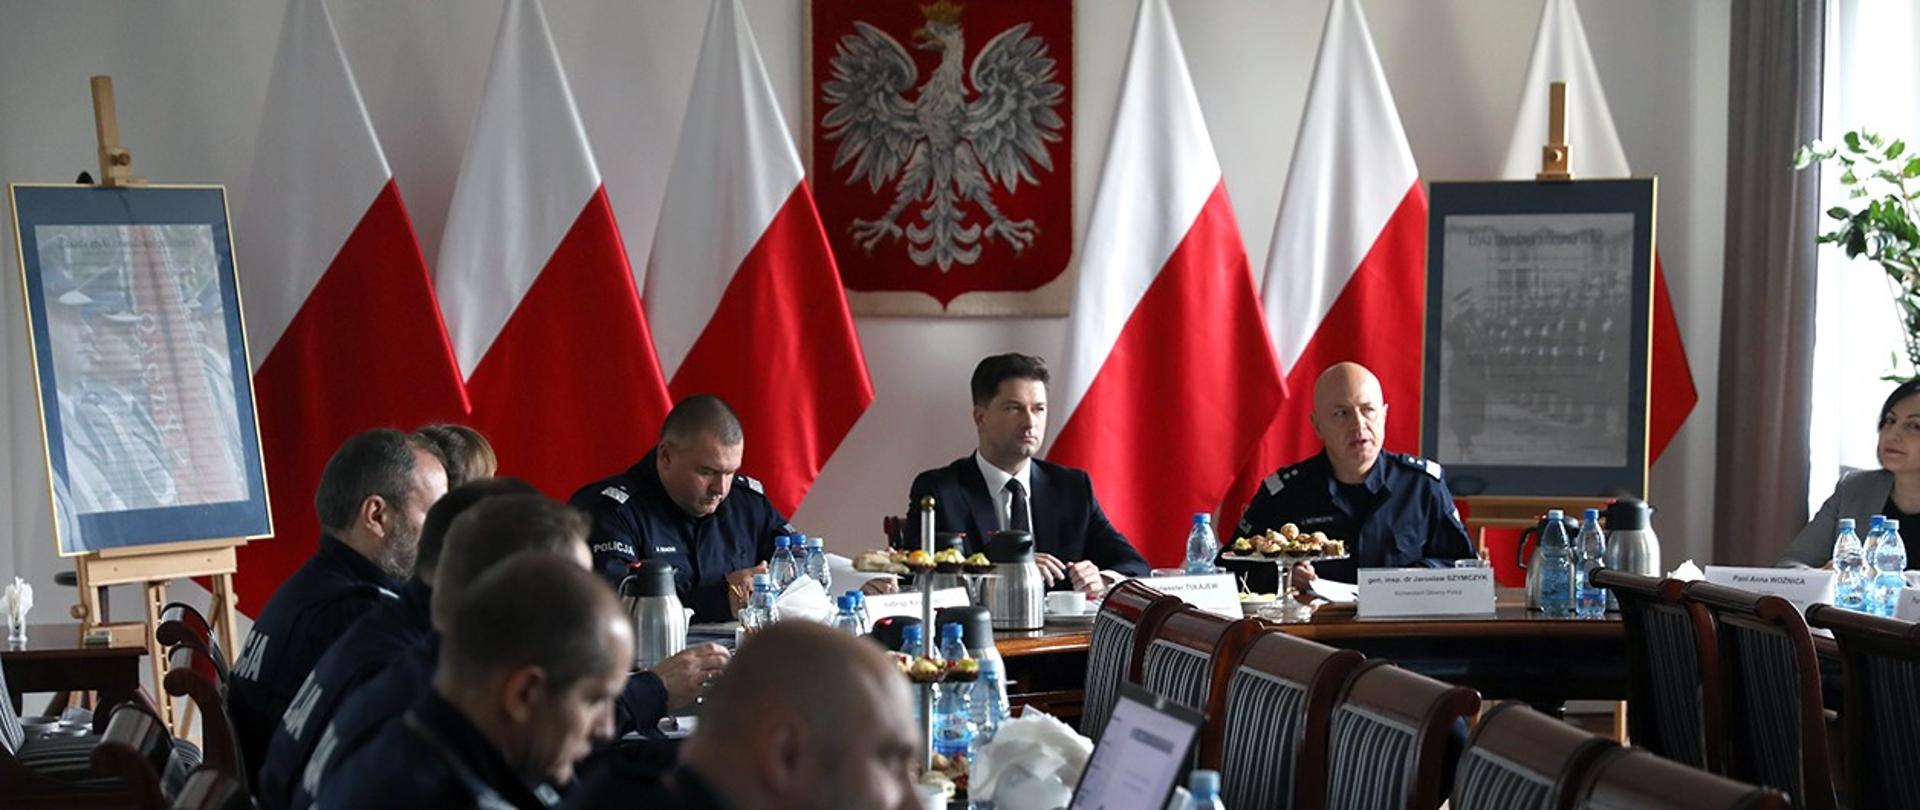 Spotkanie wiceministra Sylwestra Tułajewa z funkcjonariuszami Policji w Komendzie Głównej Policji.